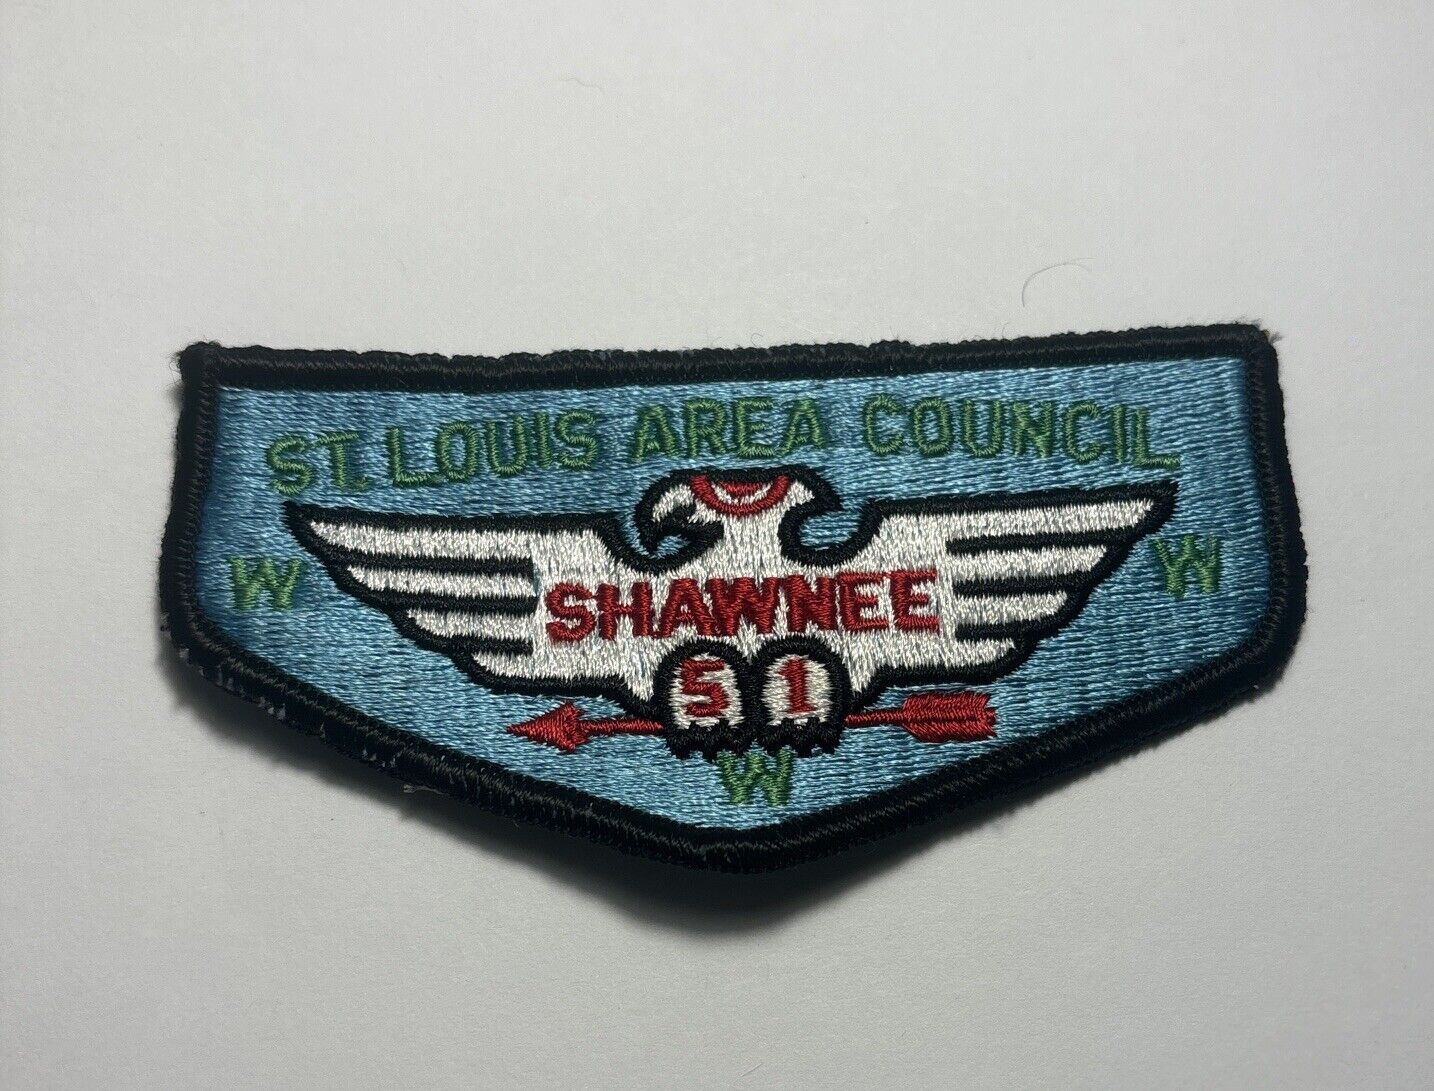 Vintage 1970’s Shawnee Lodge 51 St. Louis Council OA Lodge Flap Boy Scouts BSA